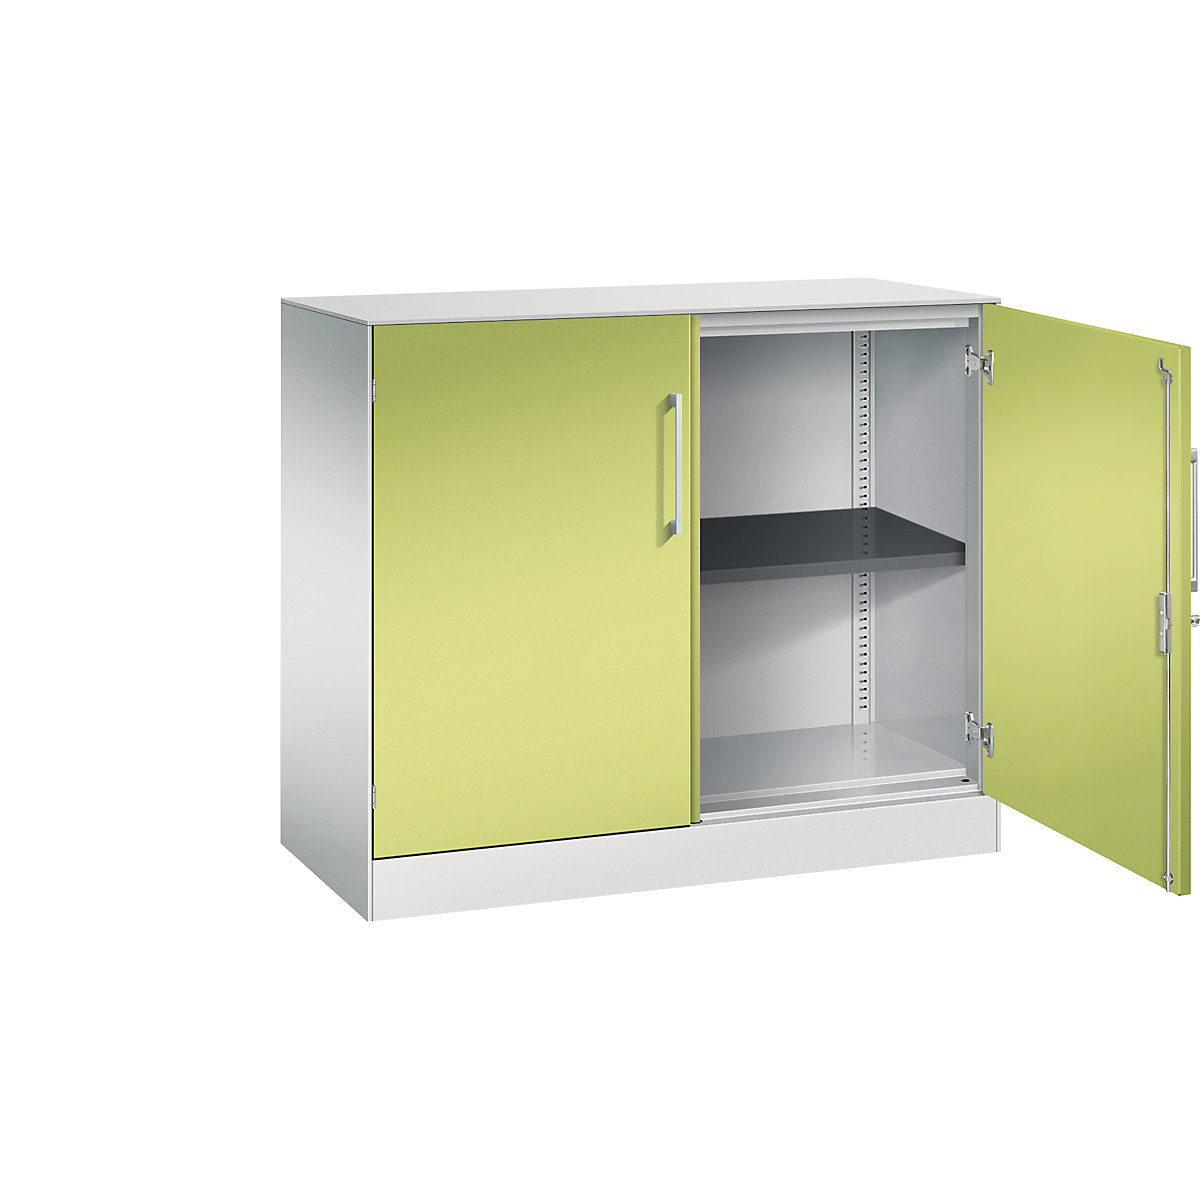 ASISTO double door cupboard, height 897 mm – C+P, width 1000 mm, 1 shelf, light grey/viridian green-15